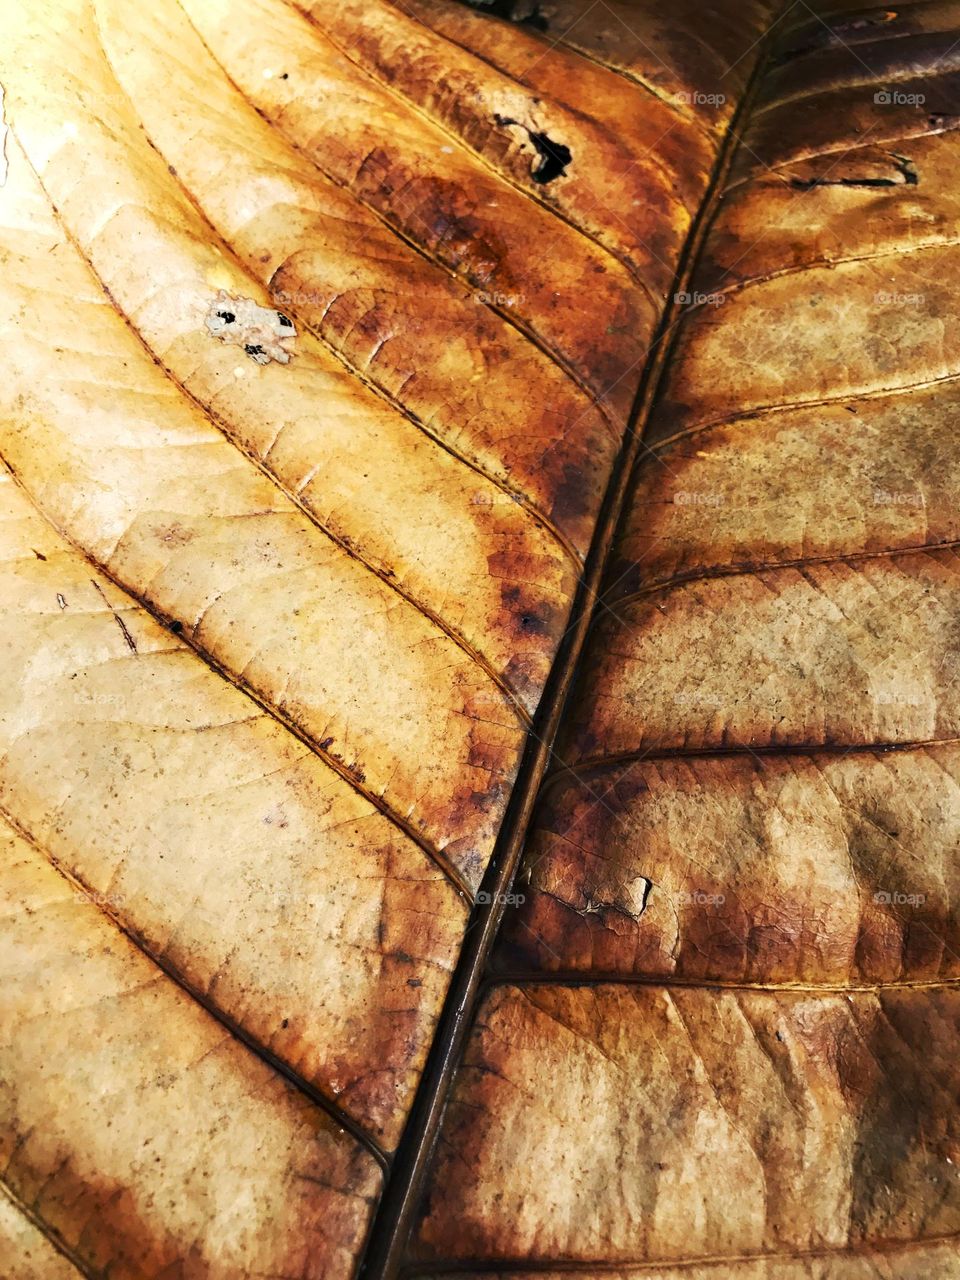 Leaf 